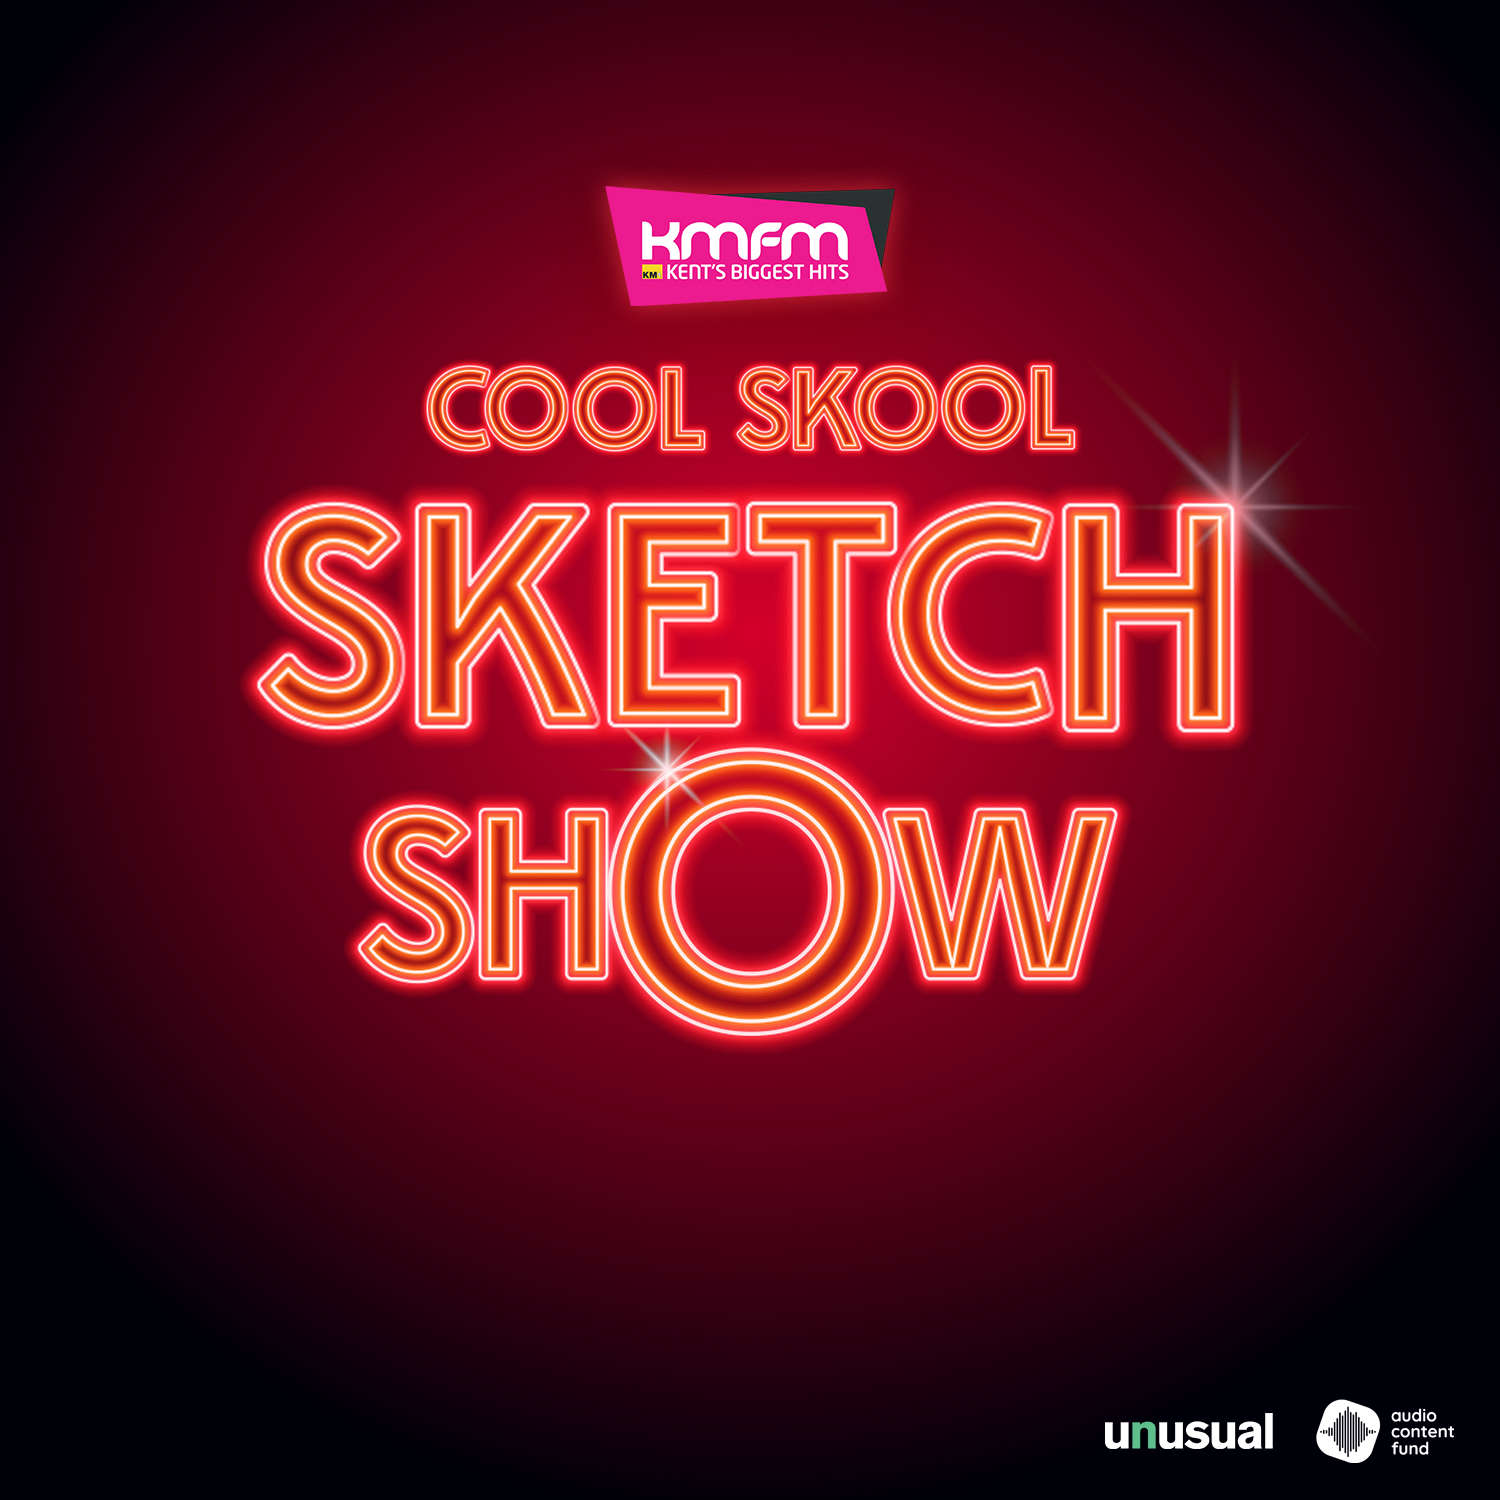 Cool Skool Sketch Show